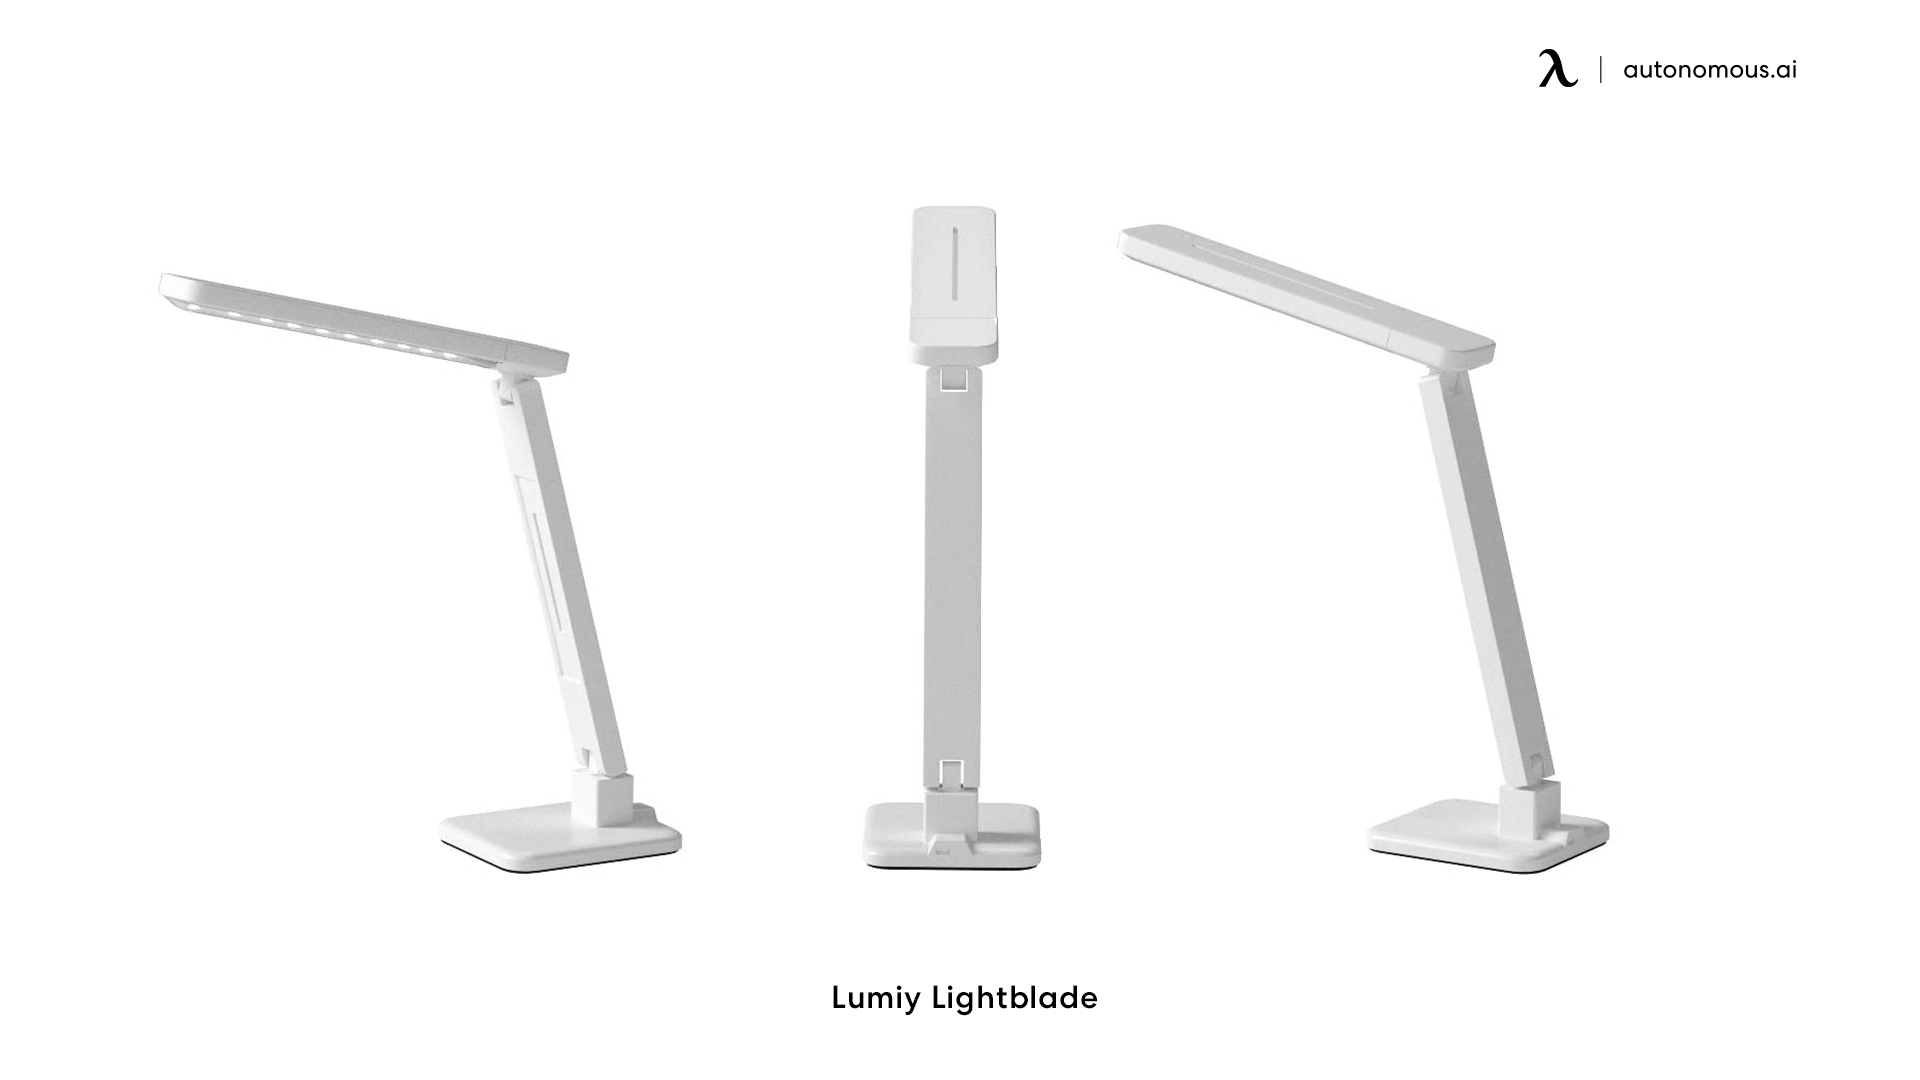 Lumiy Ligwm-htblade light for office desk